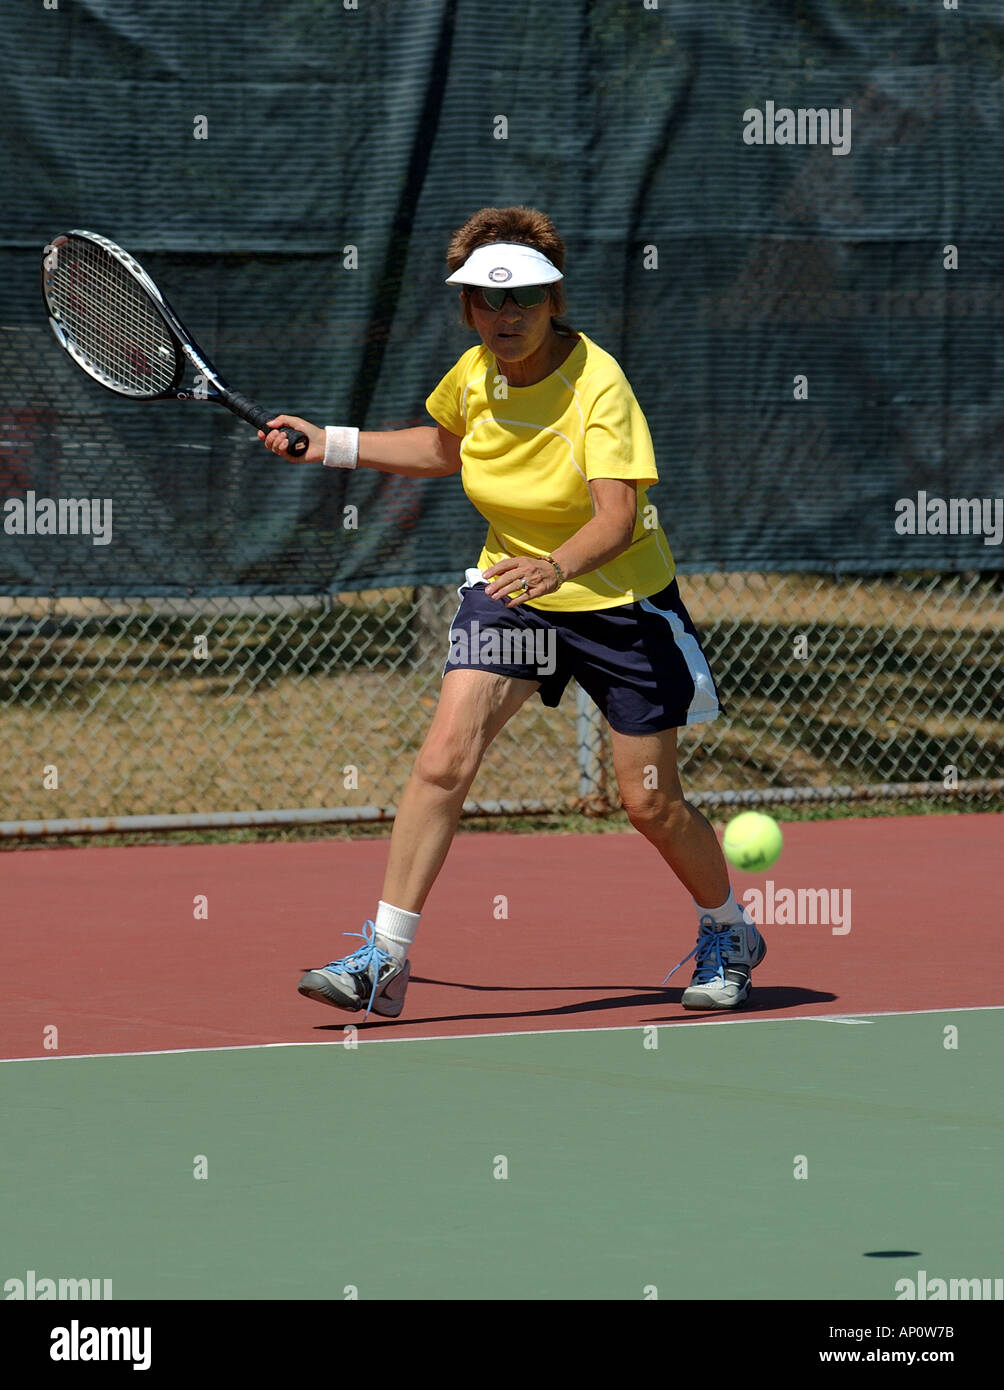 Femme mature joue au tennis Banque D'Images